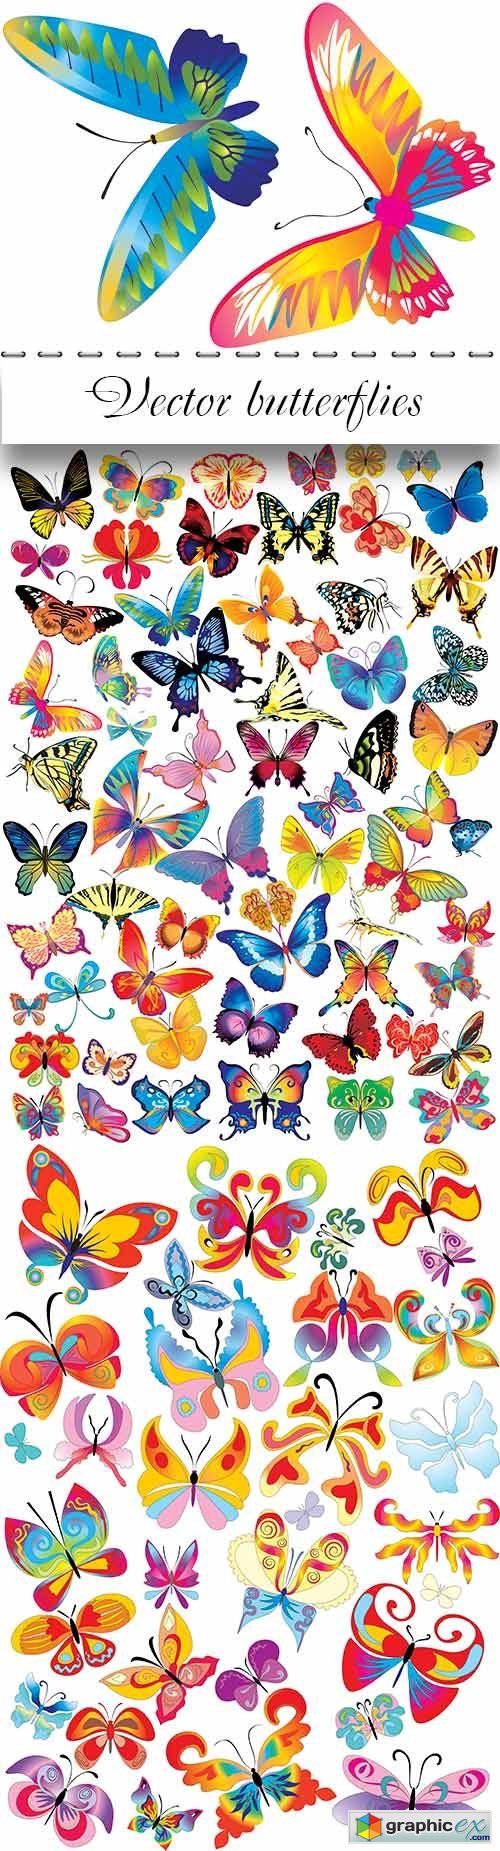 butterflies for design